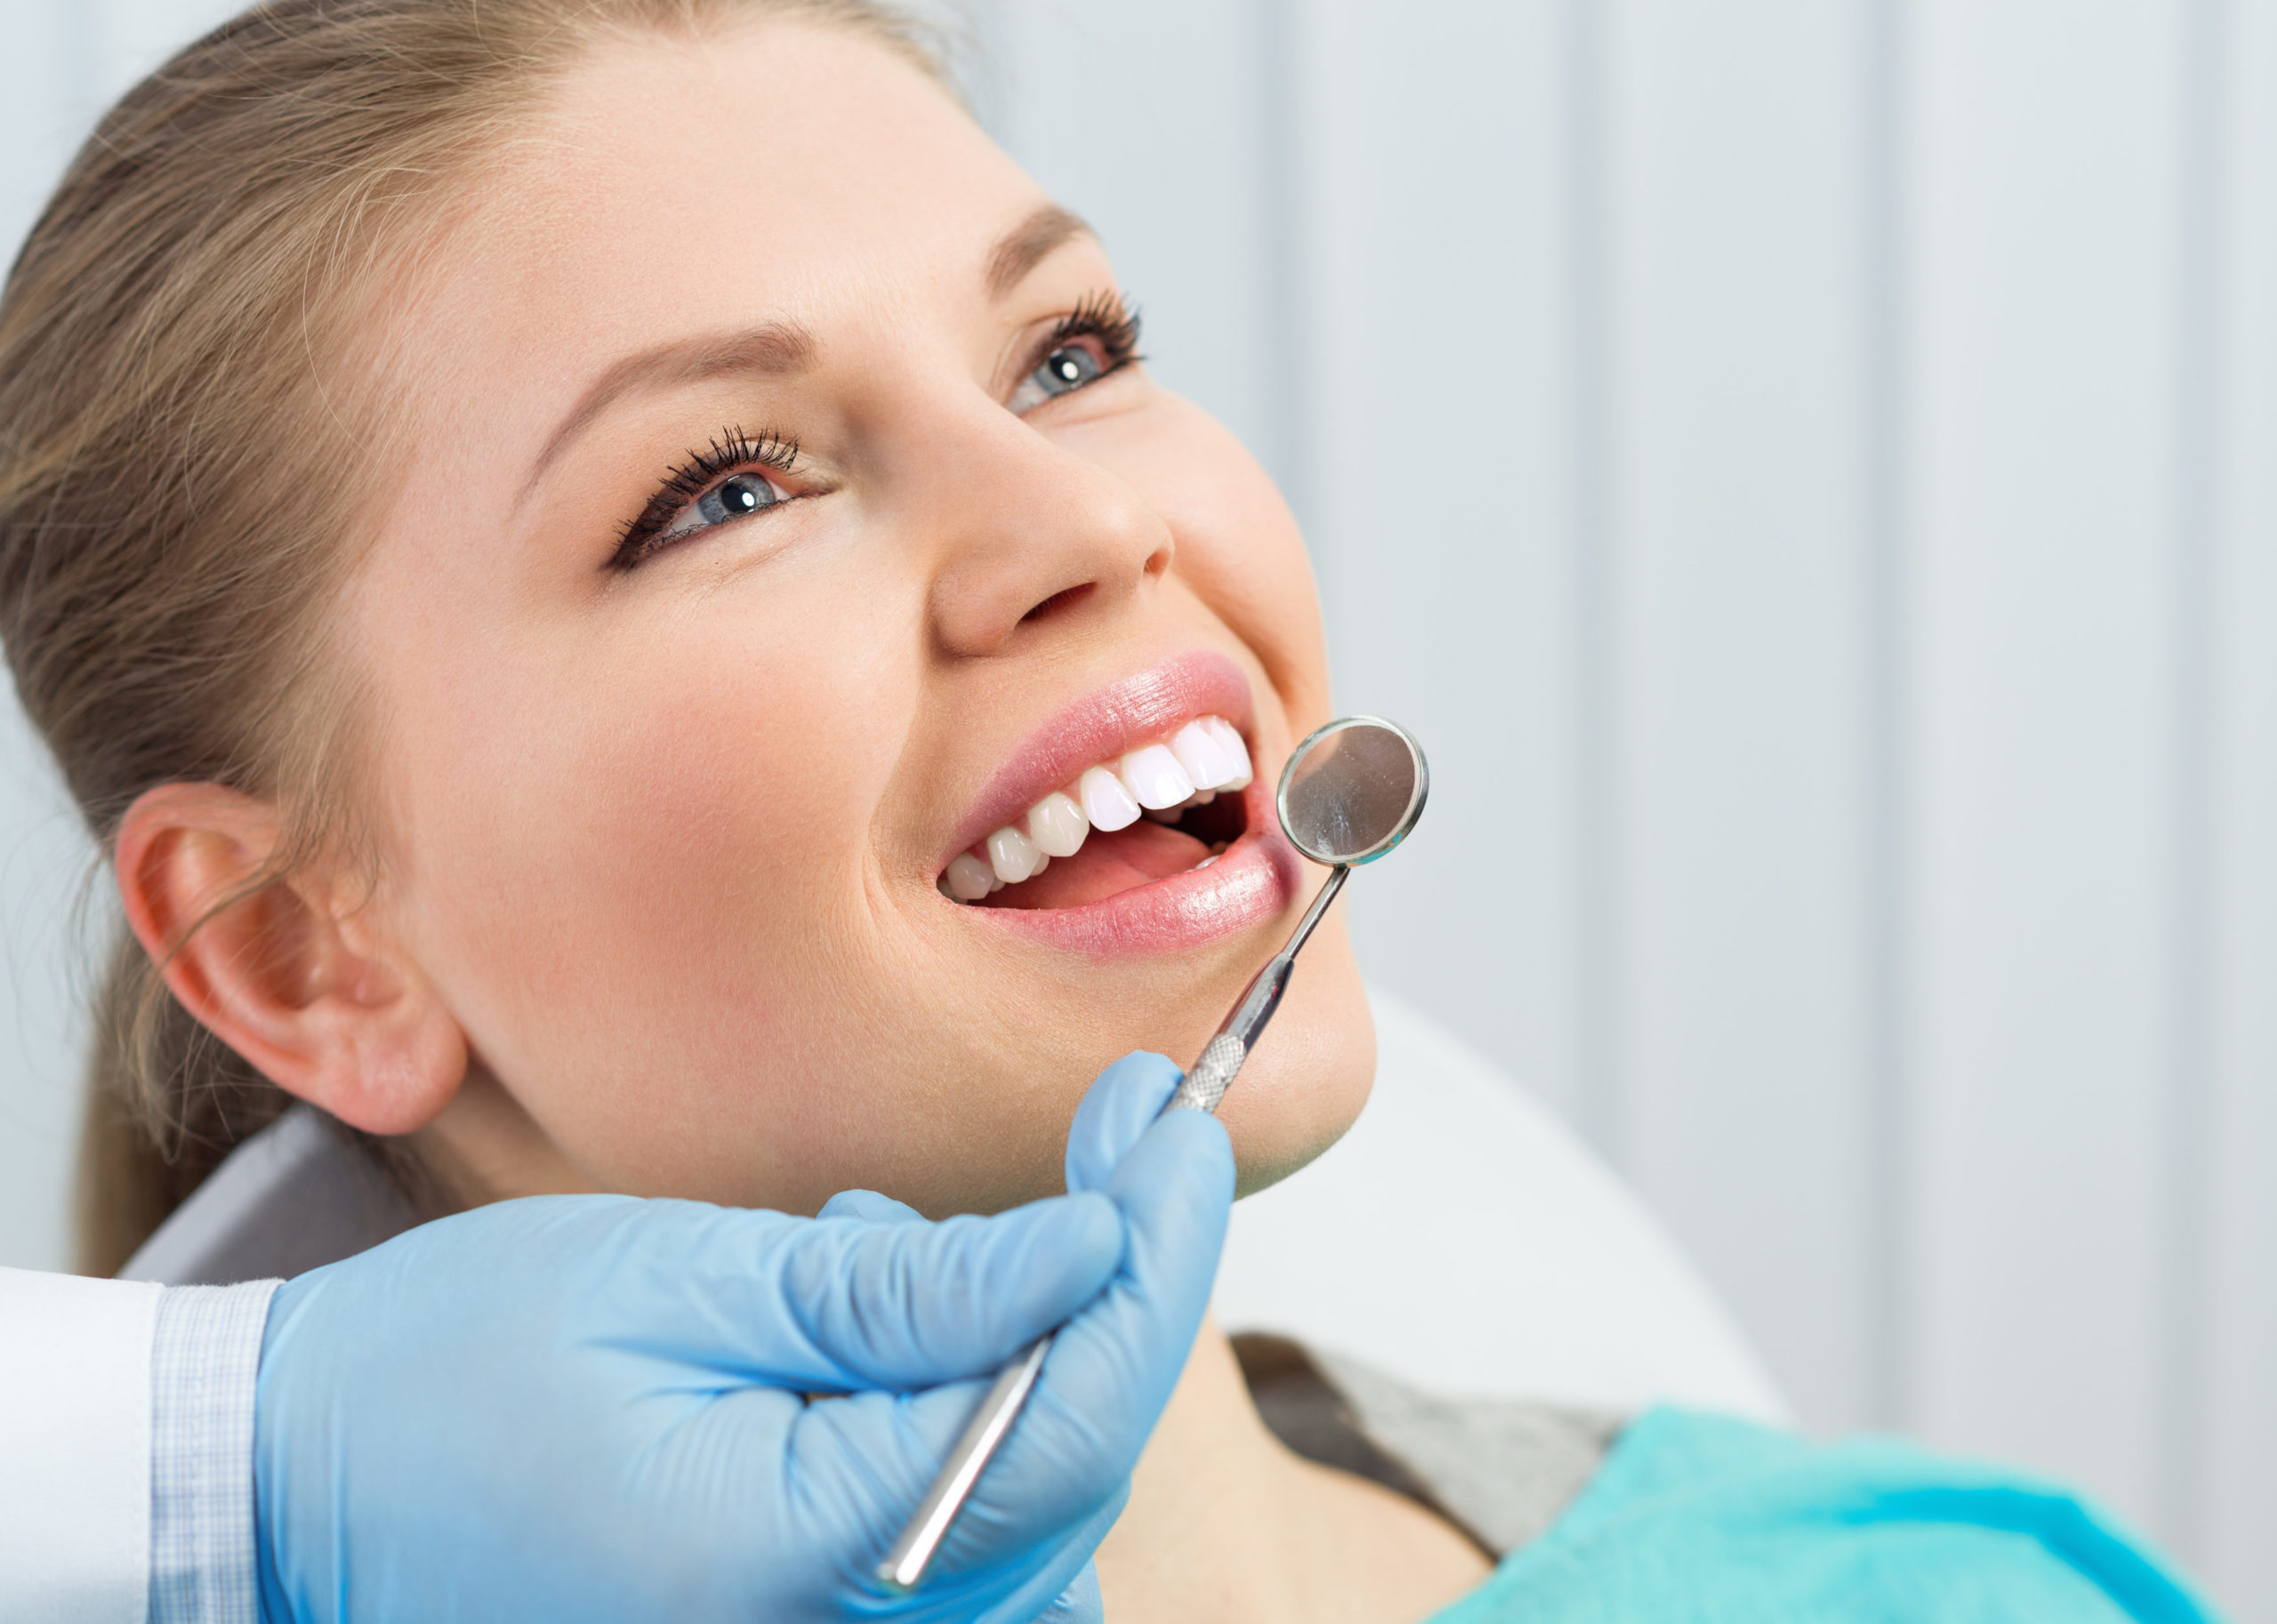 بهترین و کامل ترین روش های جلوگیری از پوسیدگی دندان چیست ؟